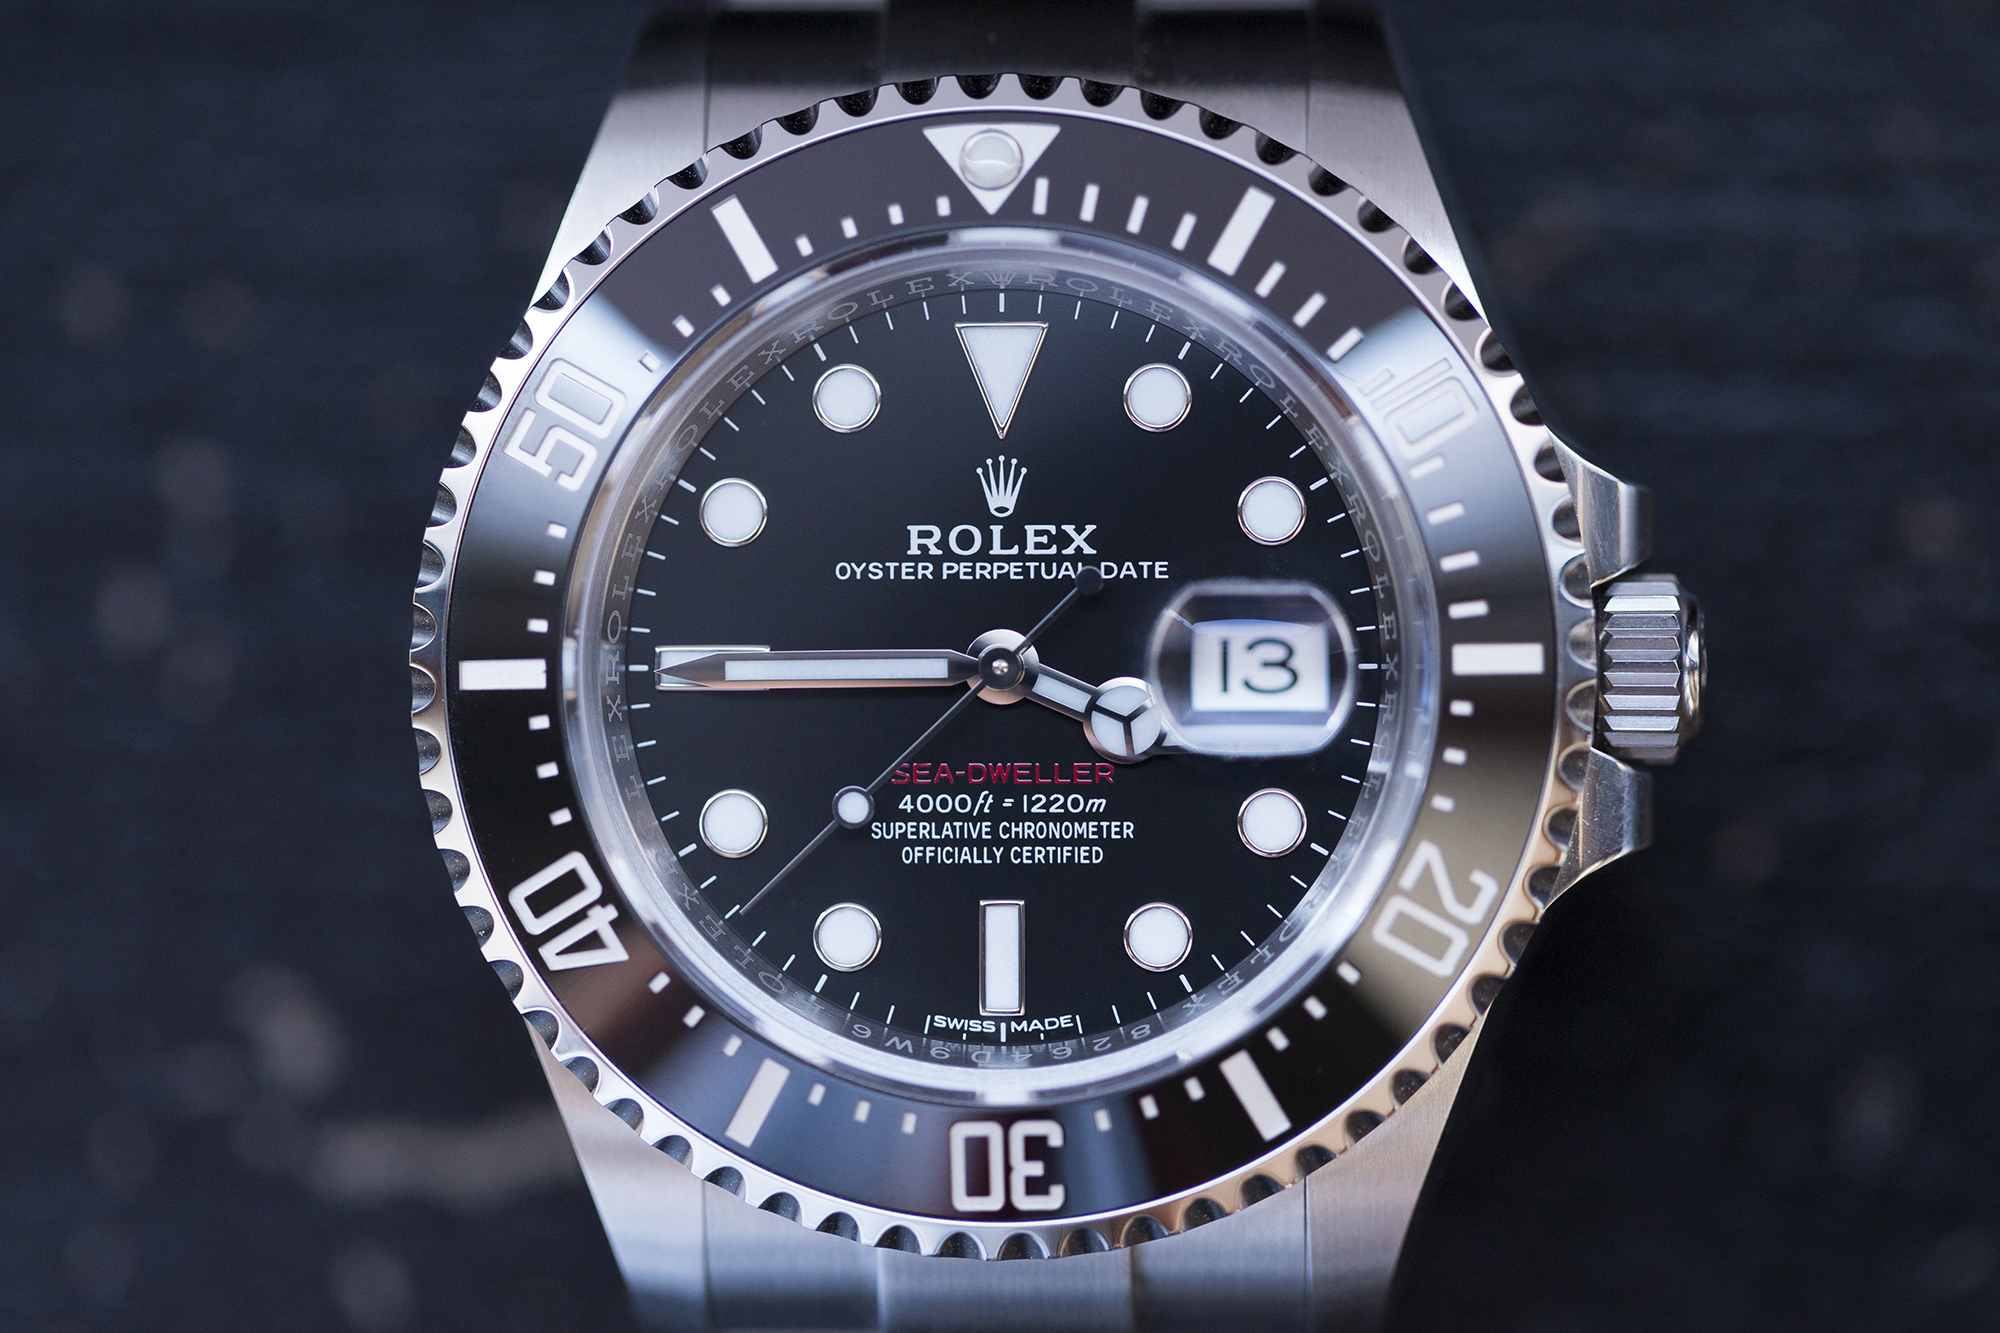 rolex sea dweller hodinkee